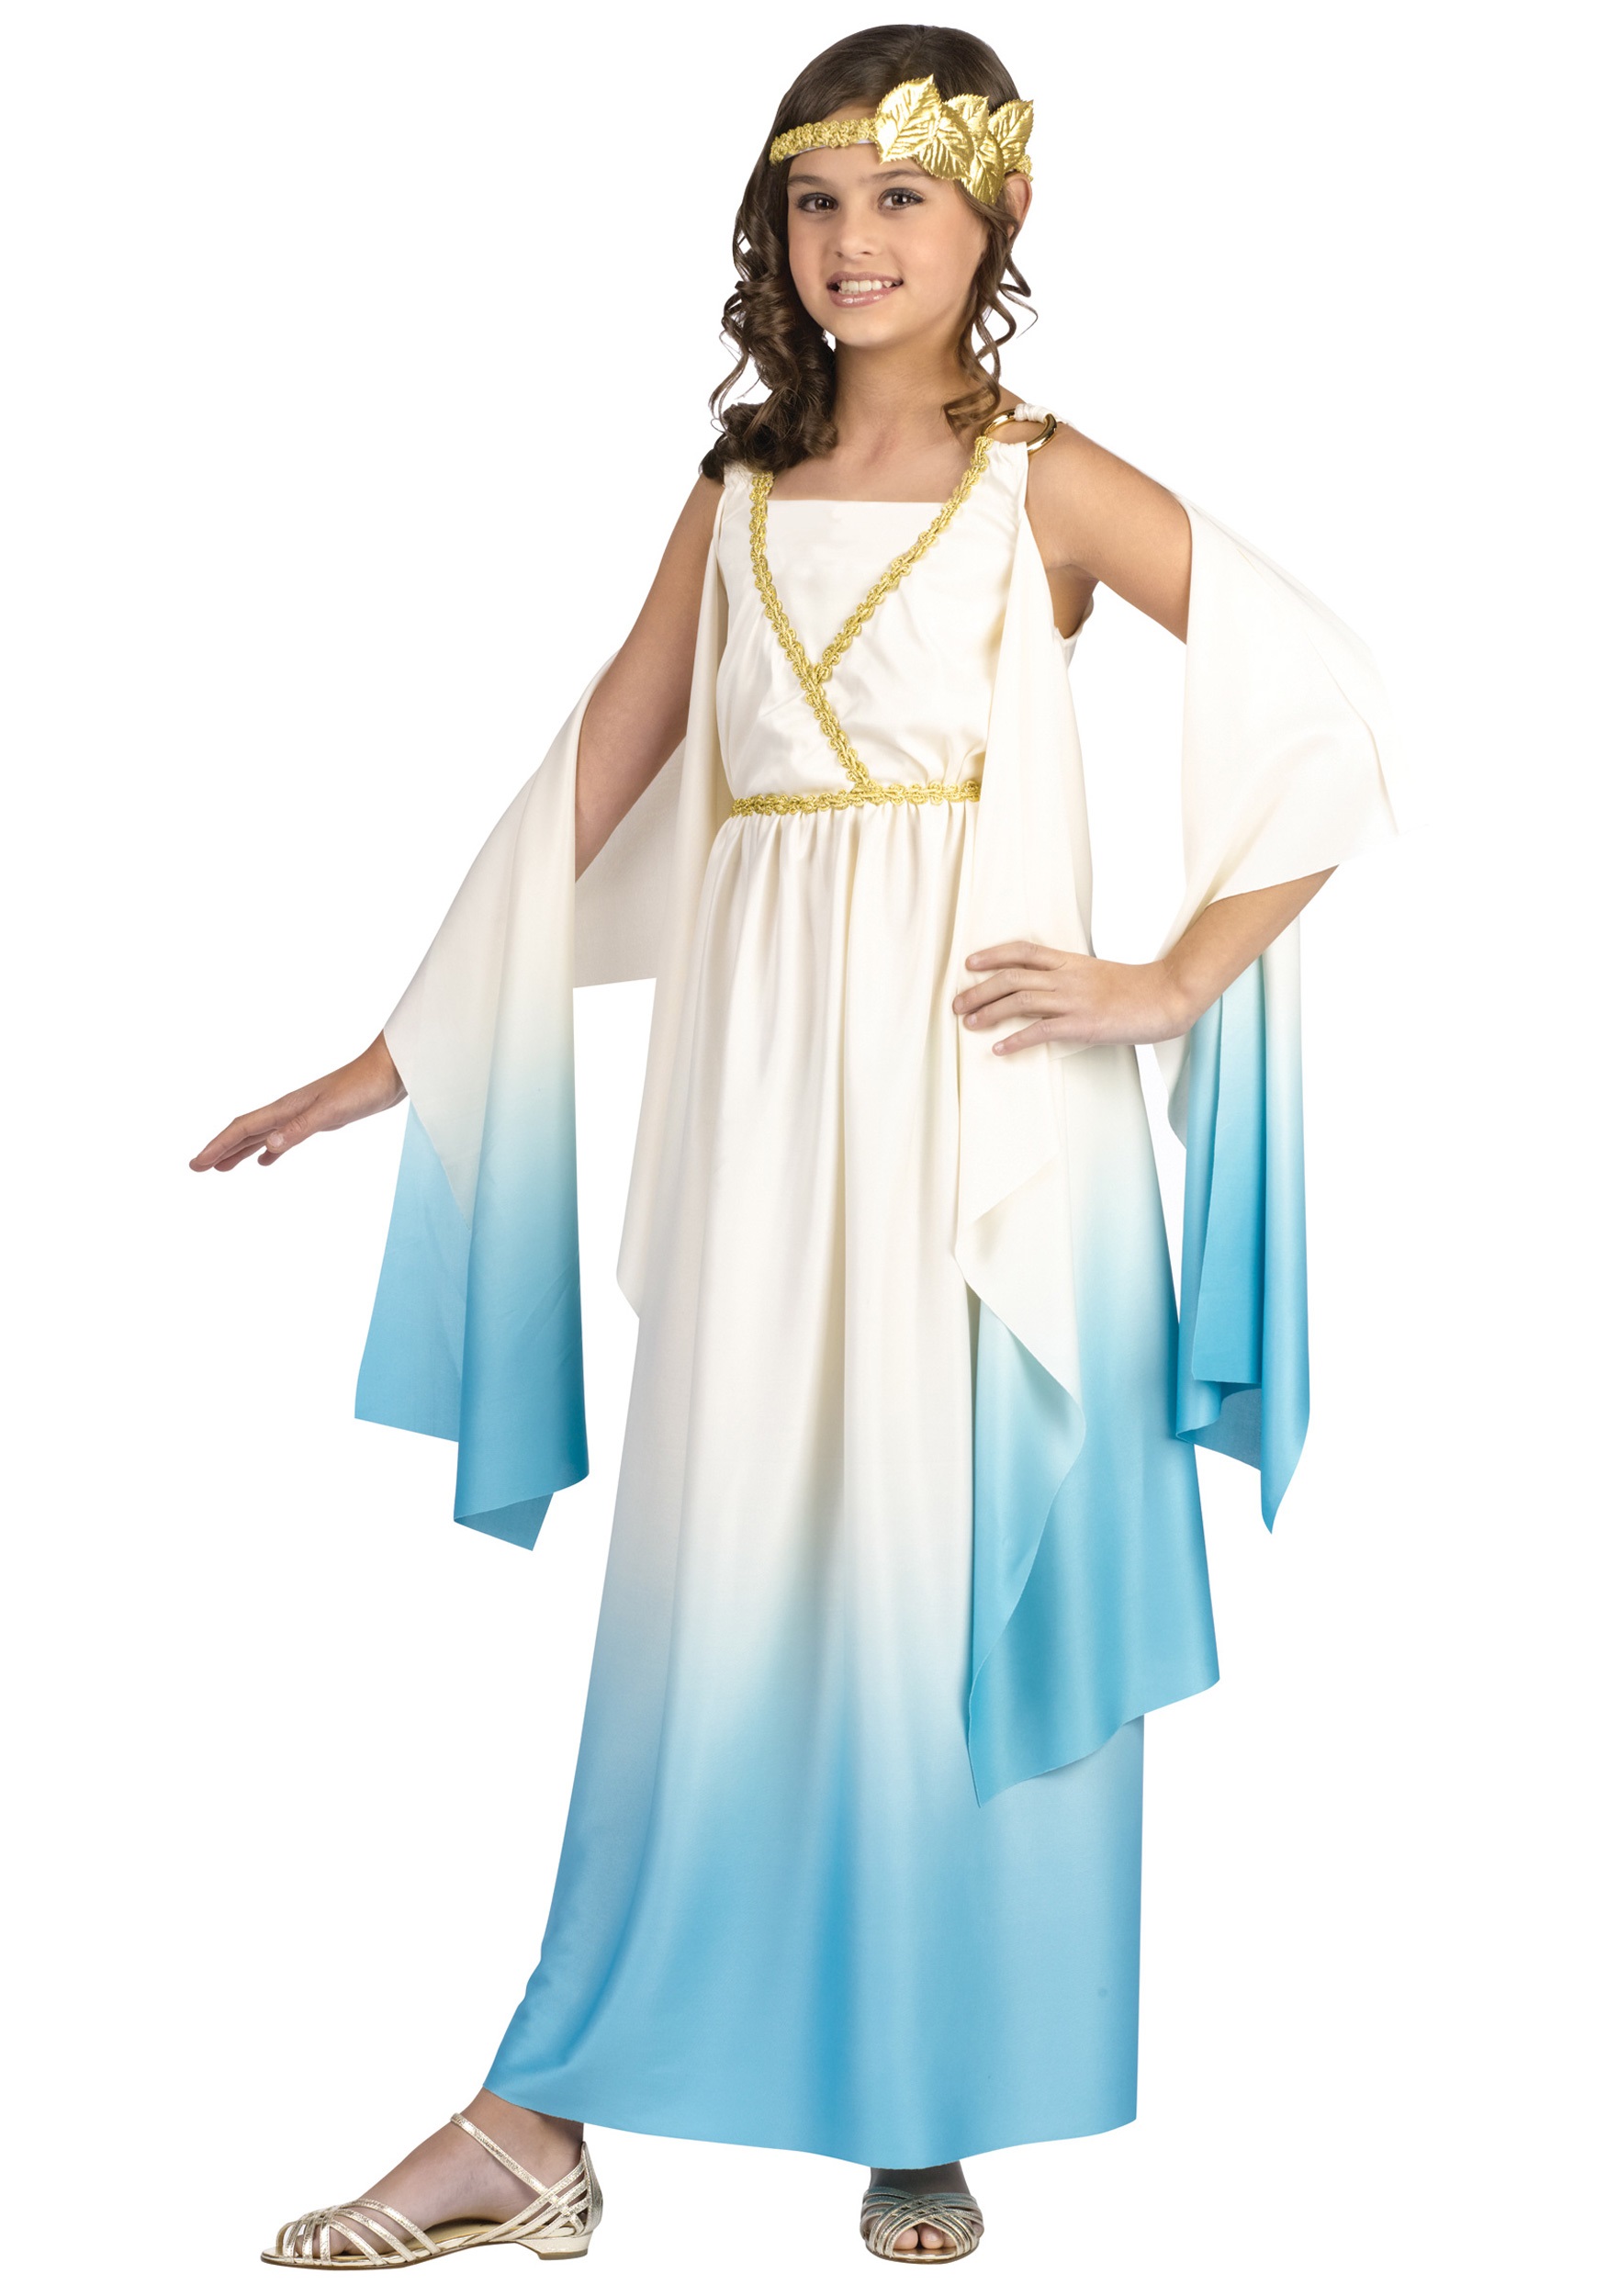 16 ideas de Disfraz diosa Griega  disfraz diosa griega, disfraz de diosa,  vestido de diosa griega